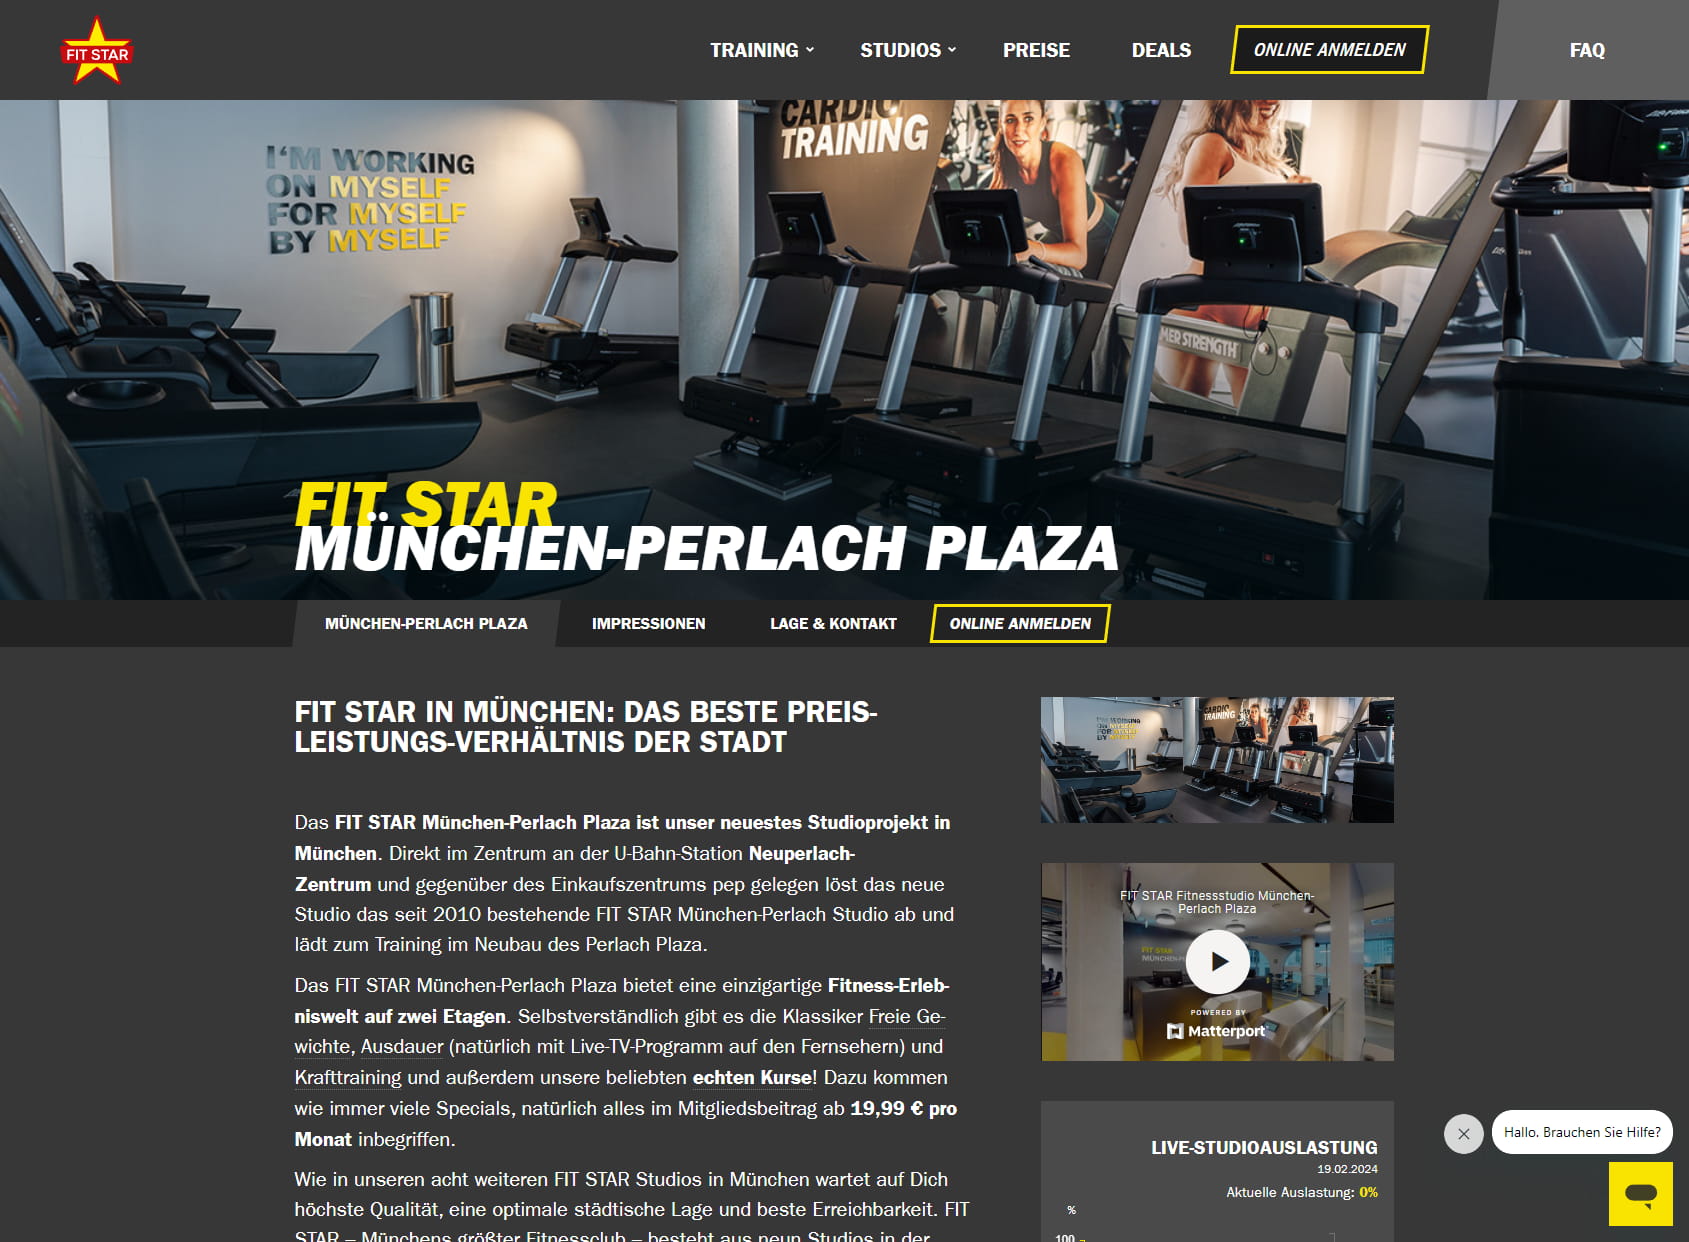 FIT STAR gym Munich-Perlach